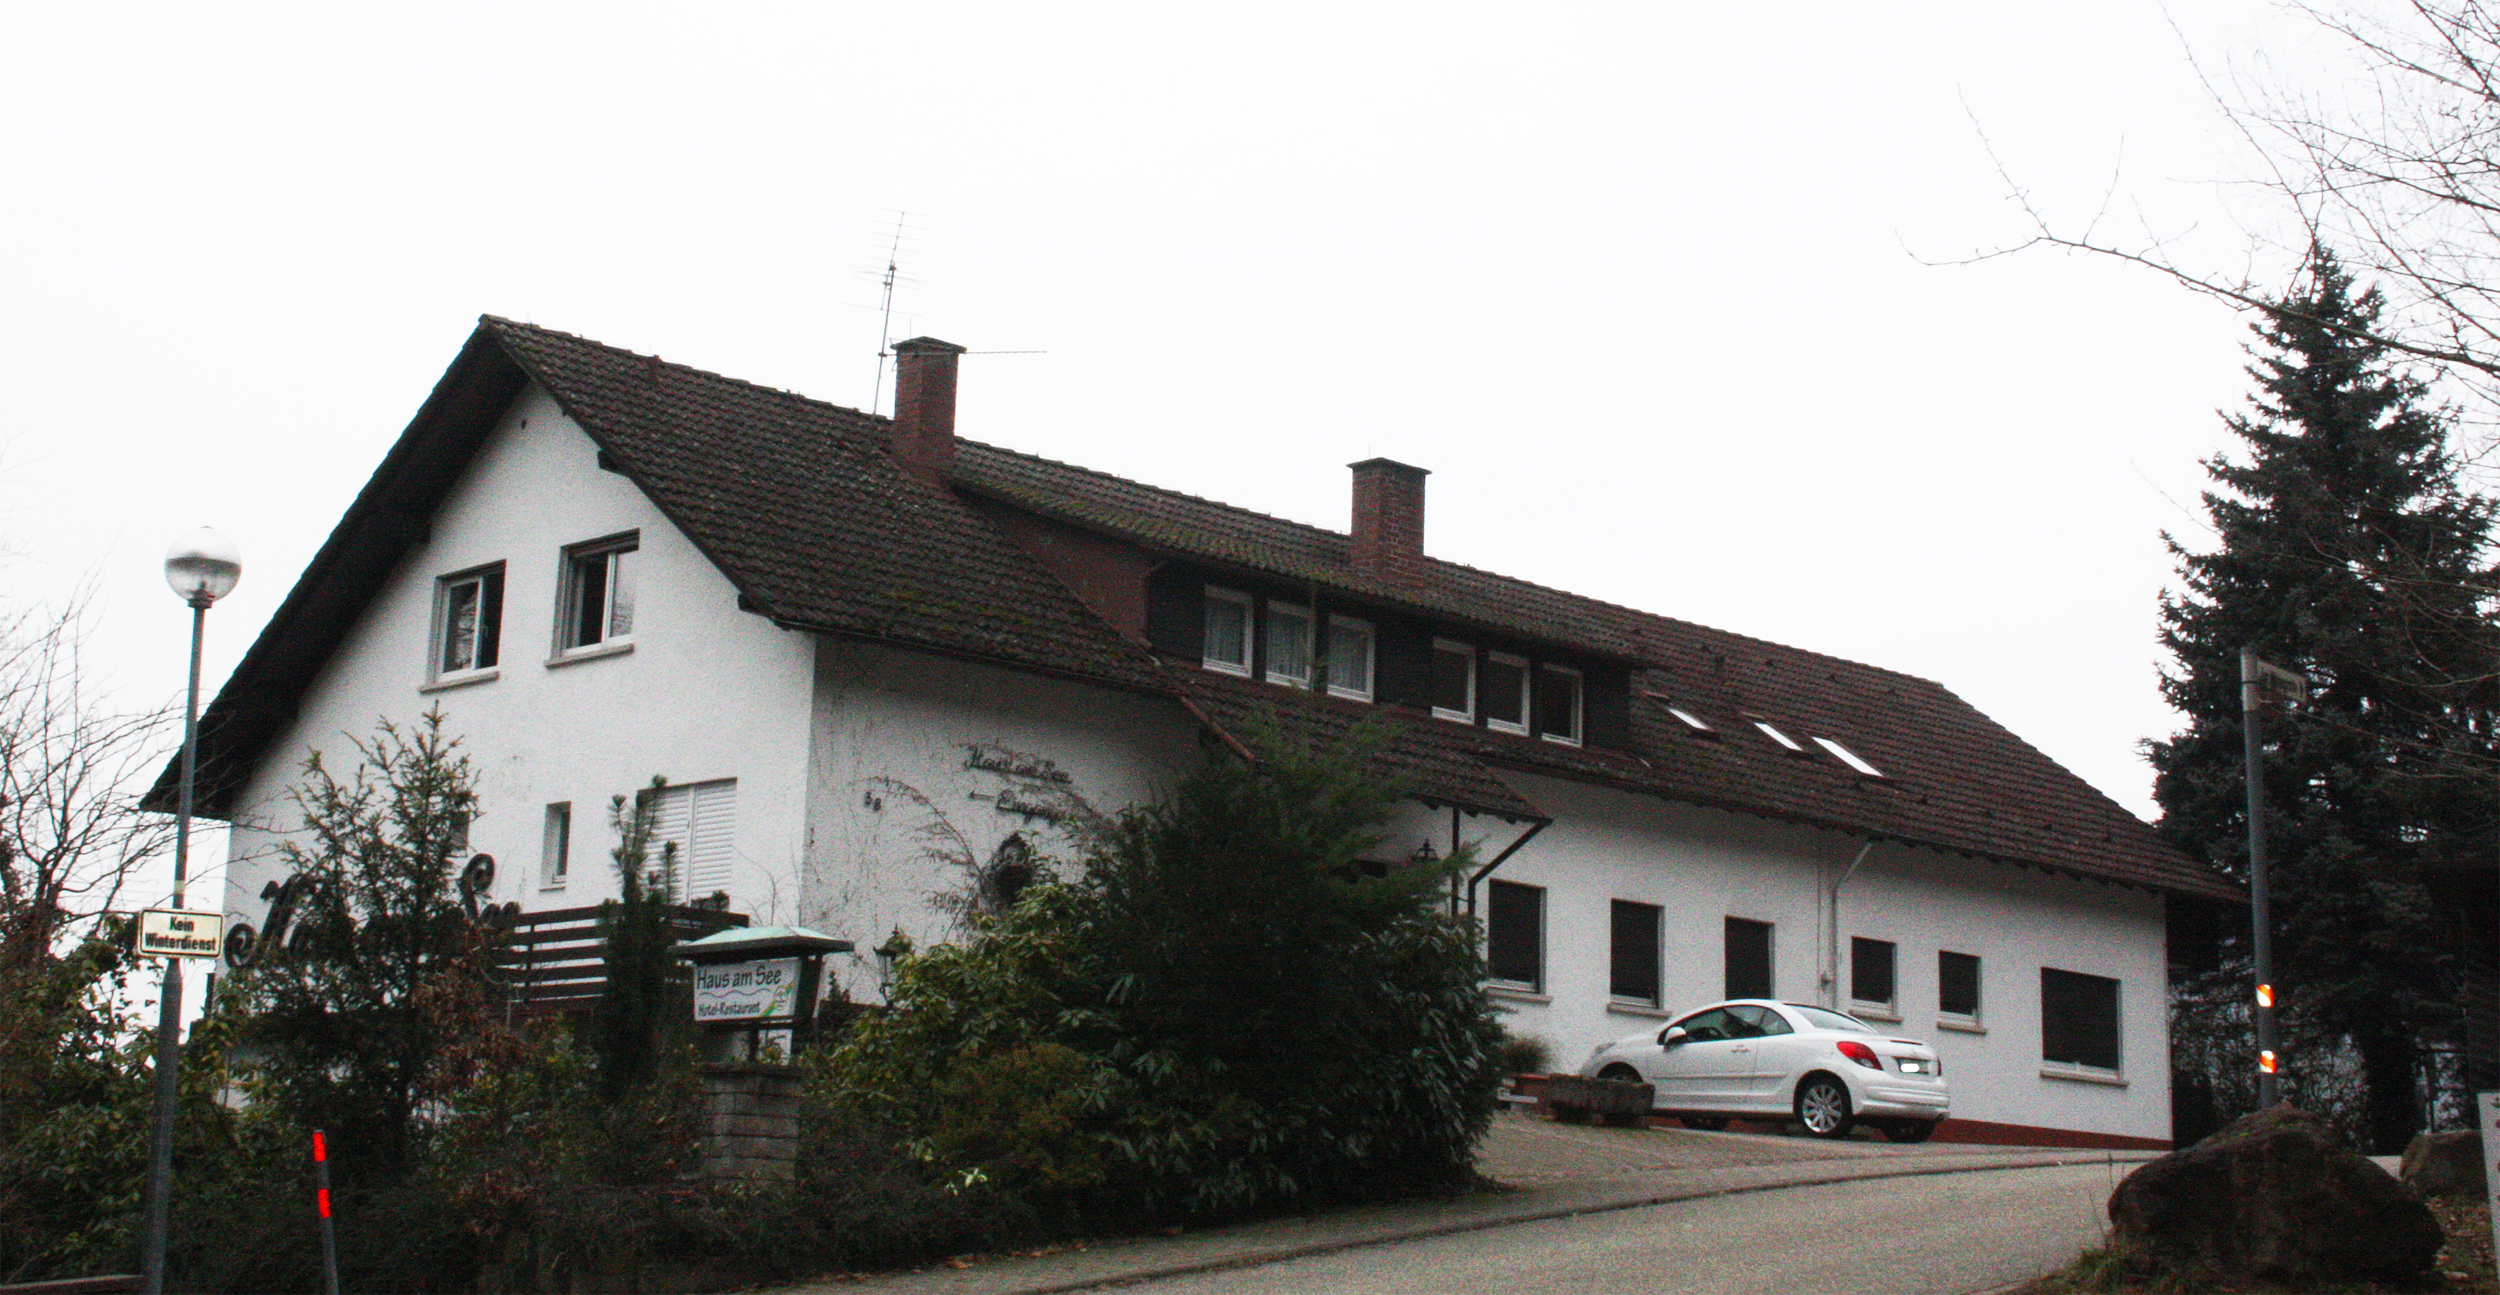 Haus am See, Sinzheim.
